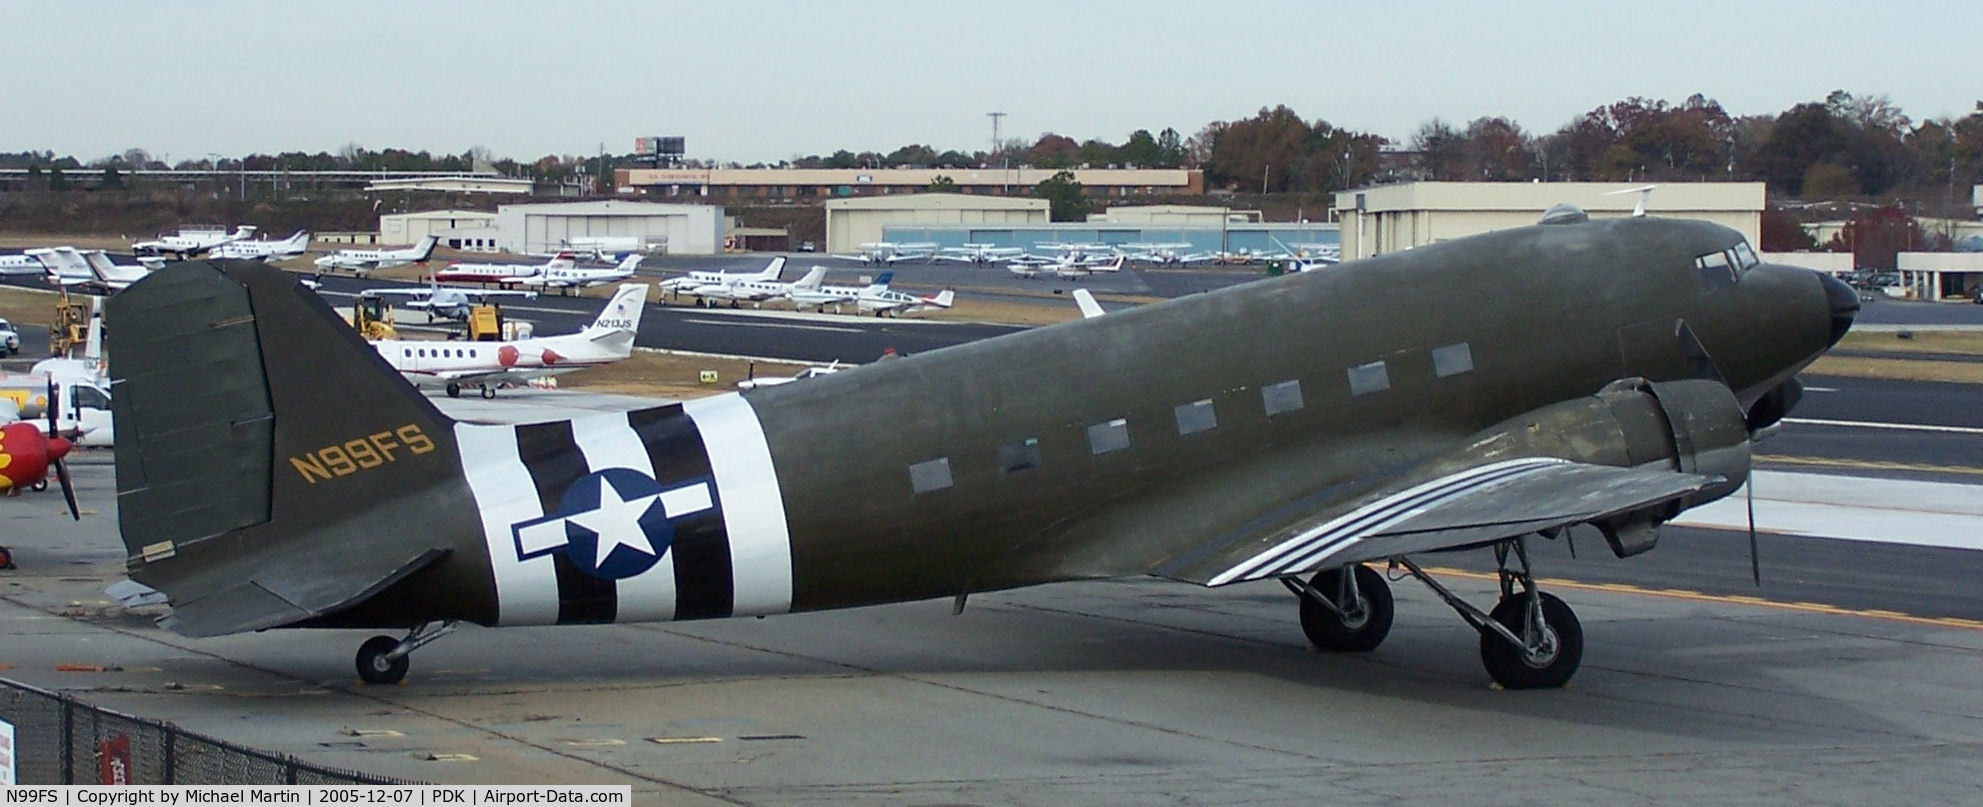 N99FS, Douglas DC-3 (C-47A) C/N 12425, C-47 on tiedown at PDK